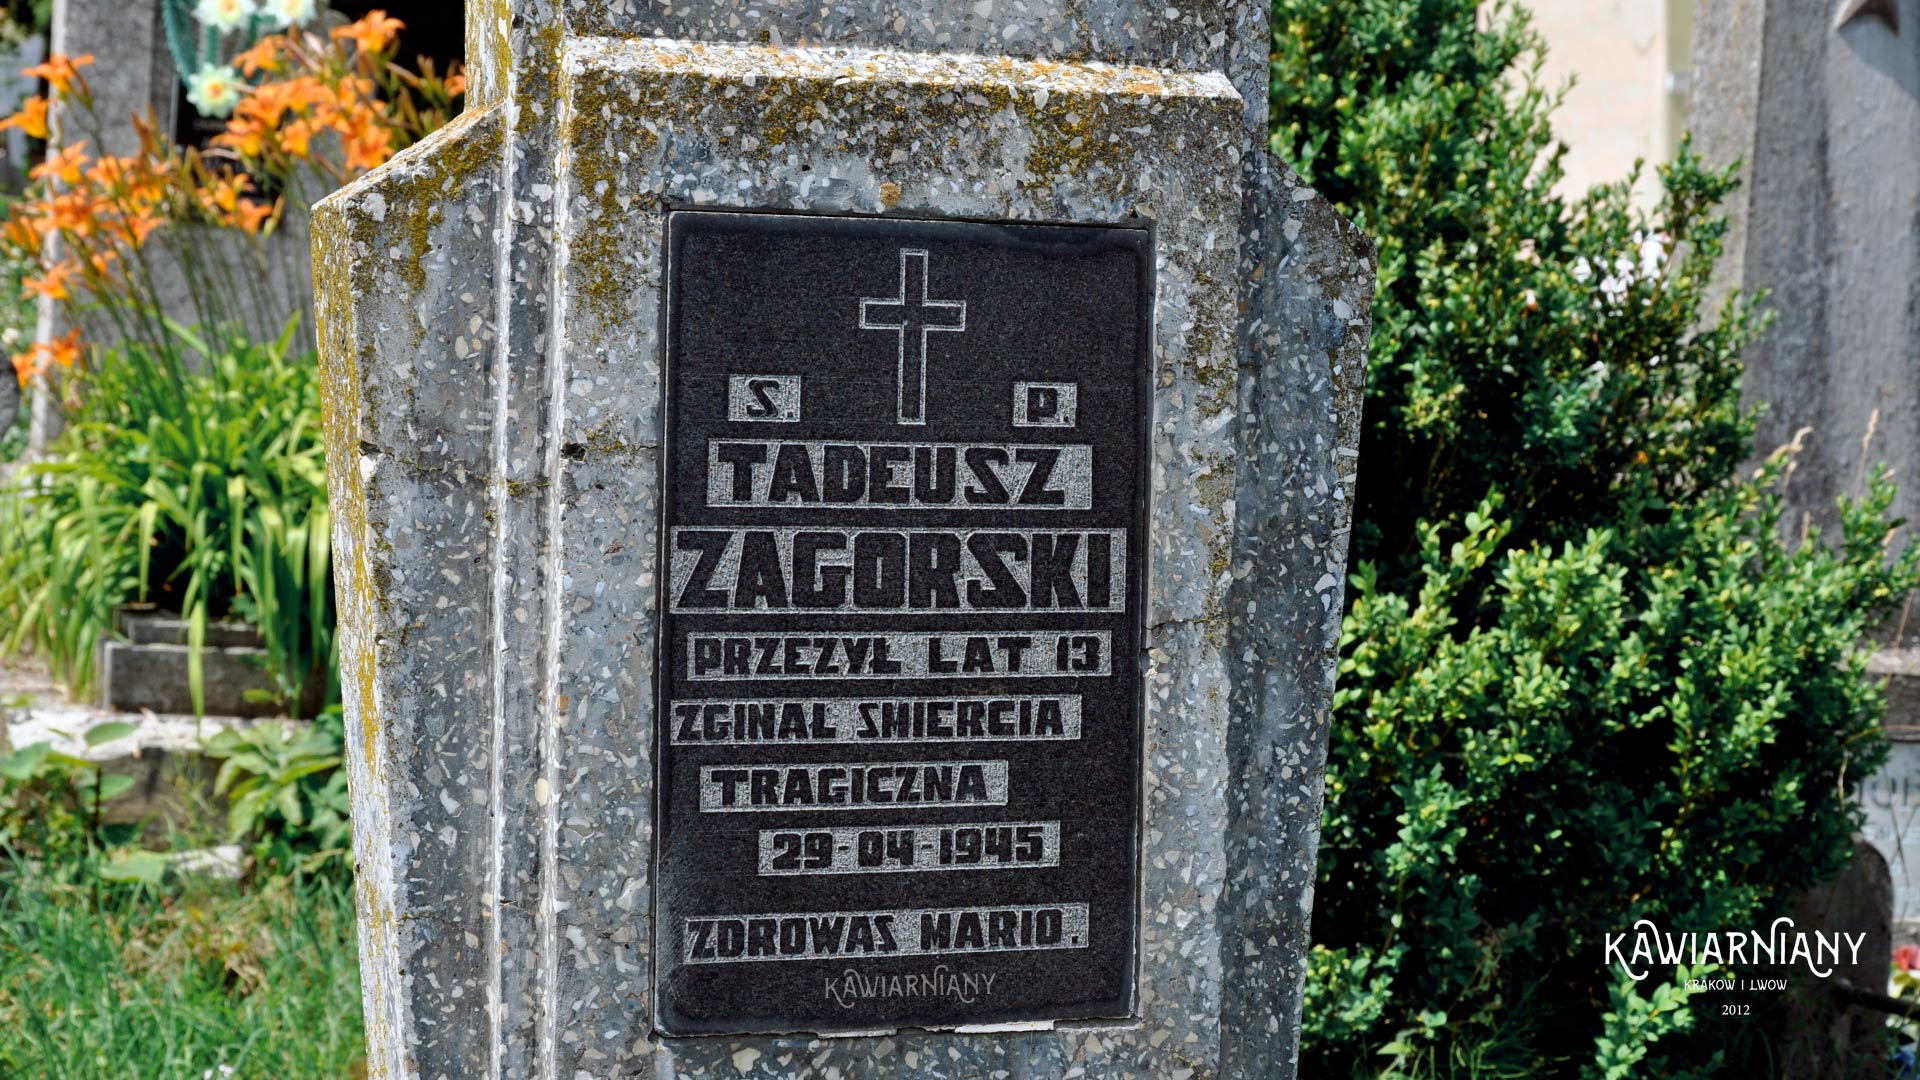 Stary cmentarz w Złoczowie